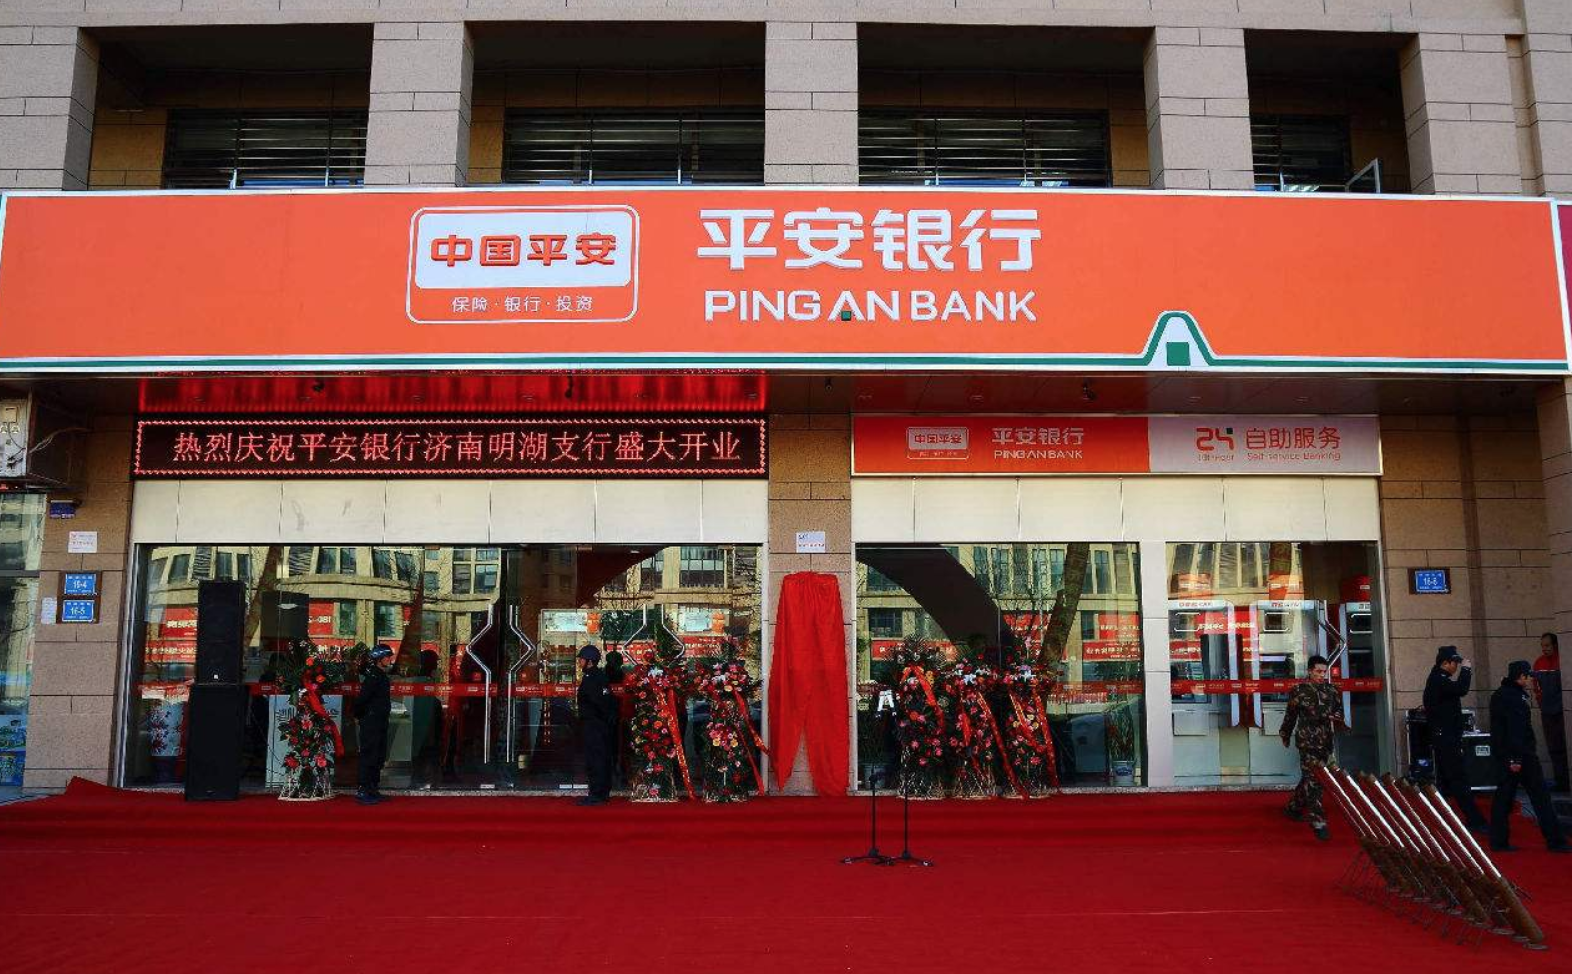 Chouzhou commercial bank co ltd. Pingan китайская компания. Страховые компании в Китае. Ping an Bank. “Ping an” компания.